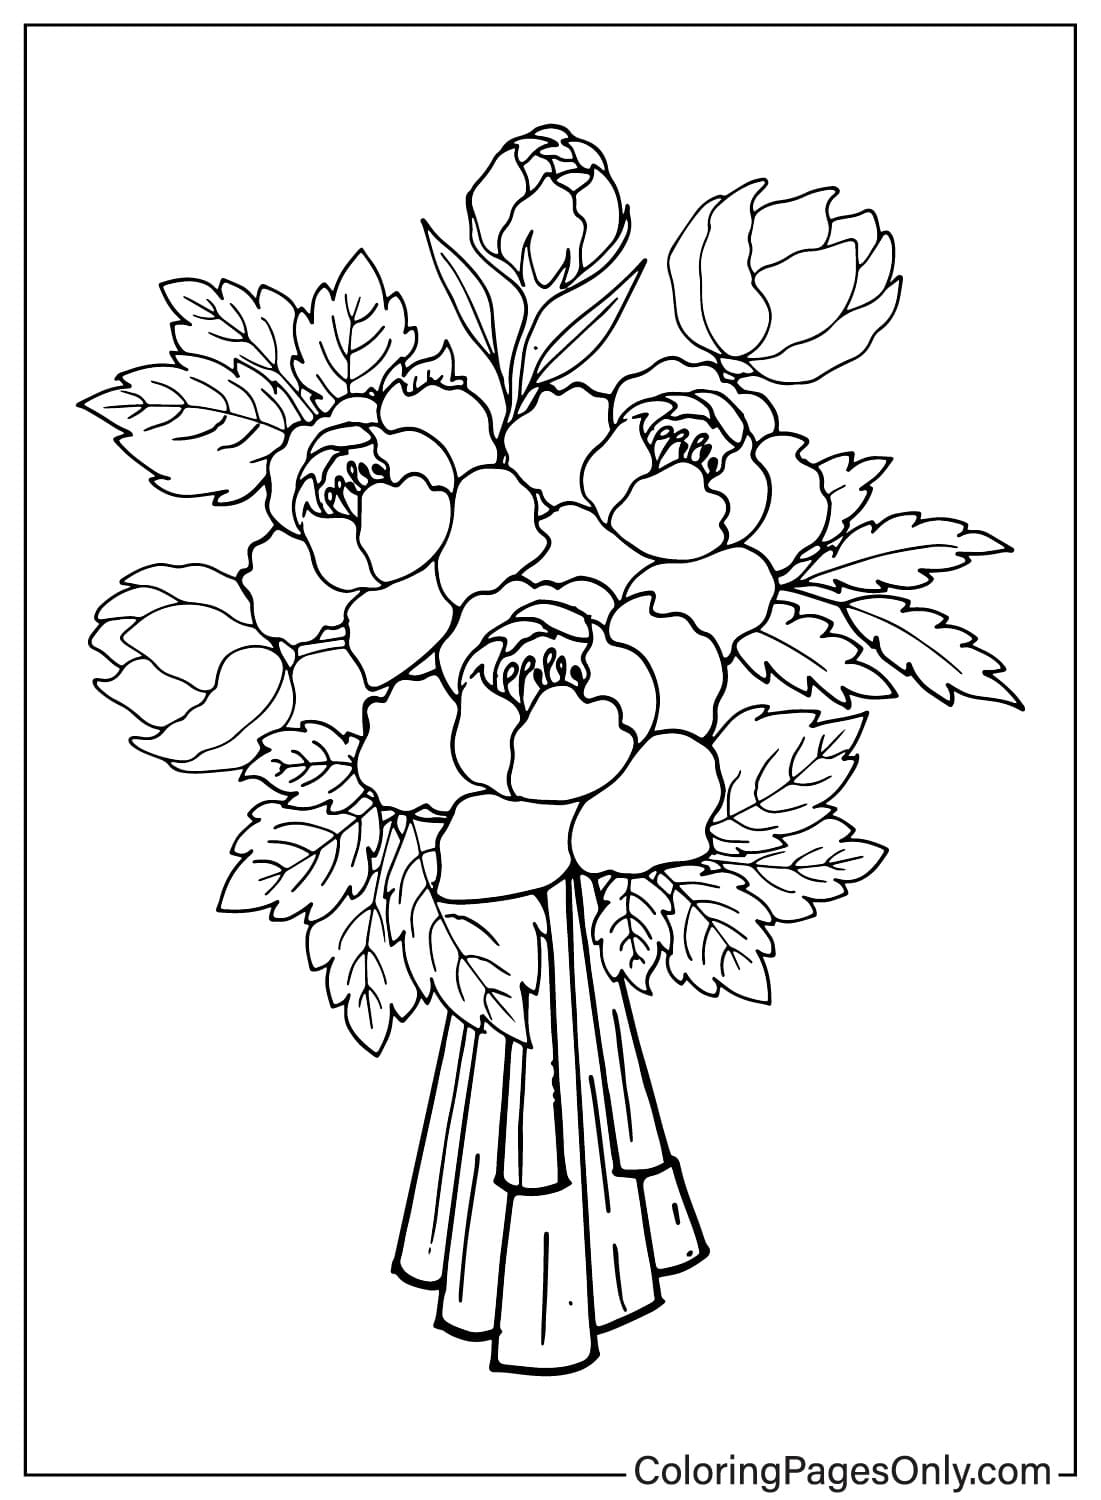 Раскраска "Букет цветов" из мультфильма "Букет цветов"